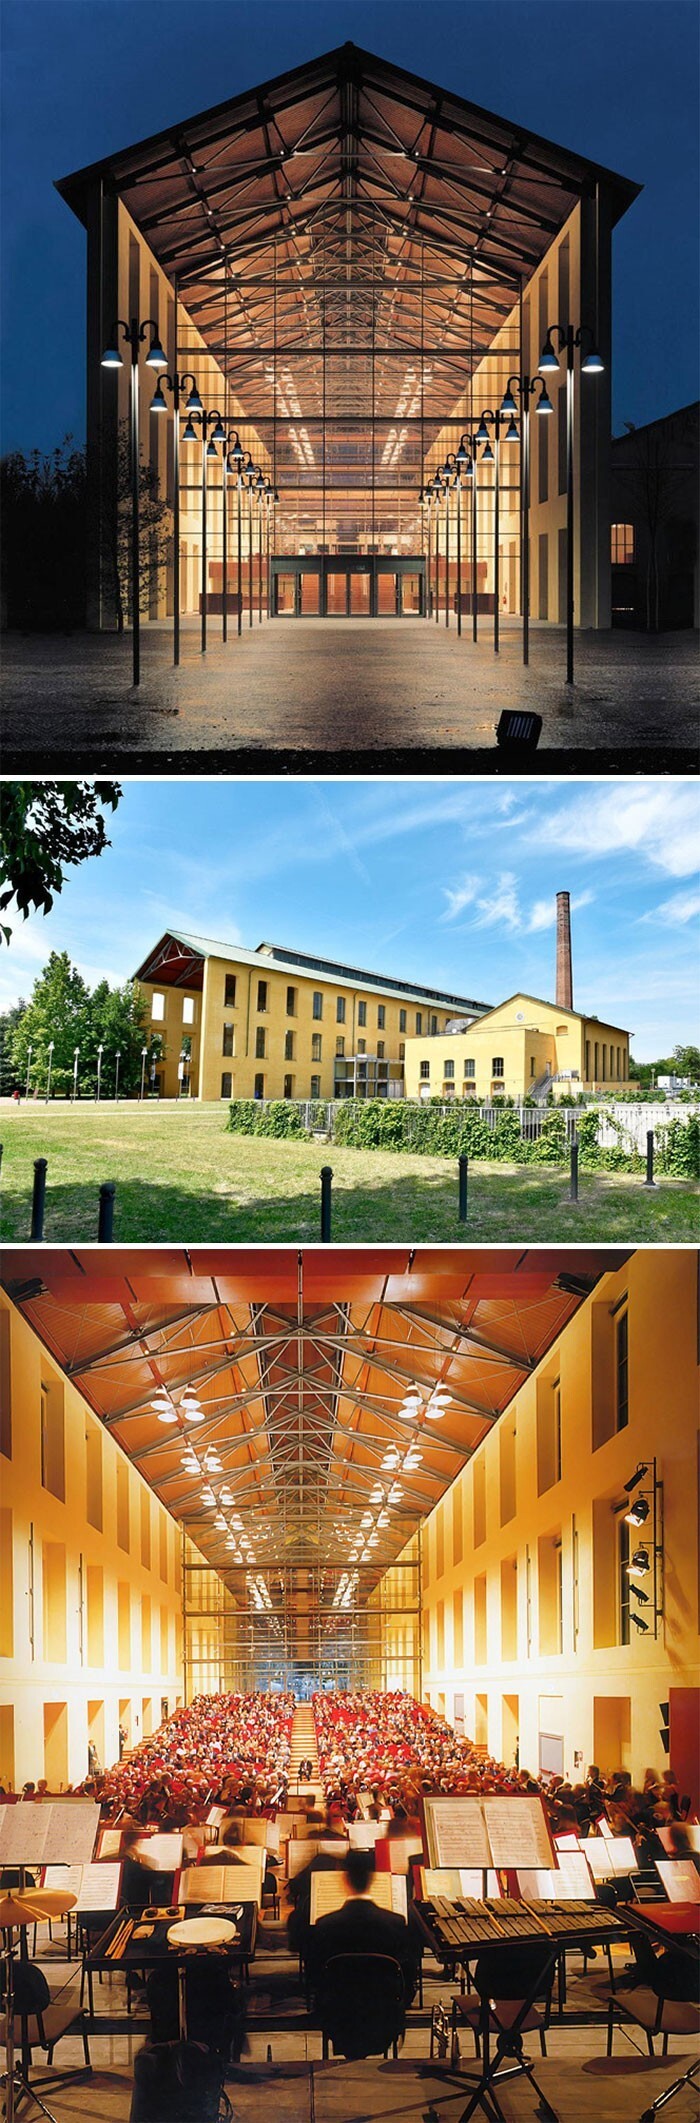 13. В 1996 году Ренцо Пьяно перестроил старый сахарный завод в концертный зал Никколо Паганини. Он находится в Парме, Италия.